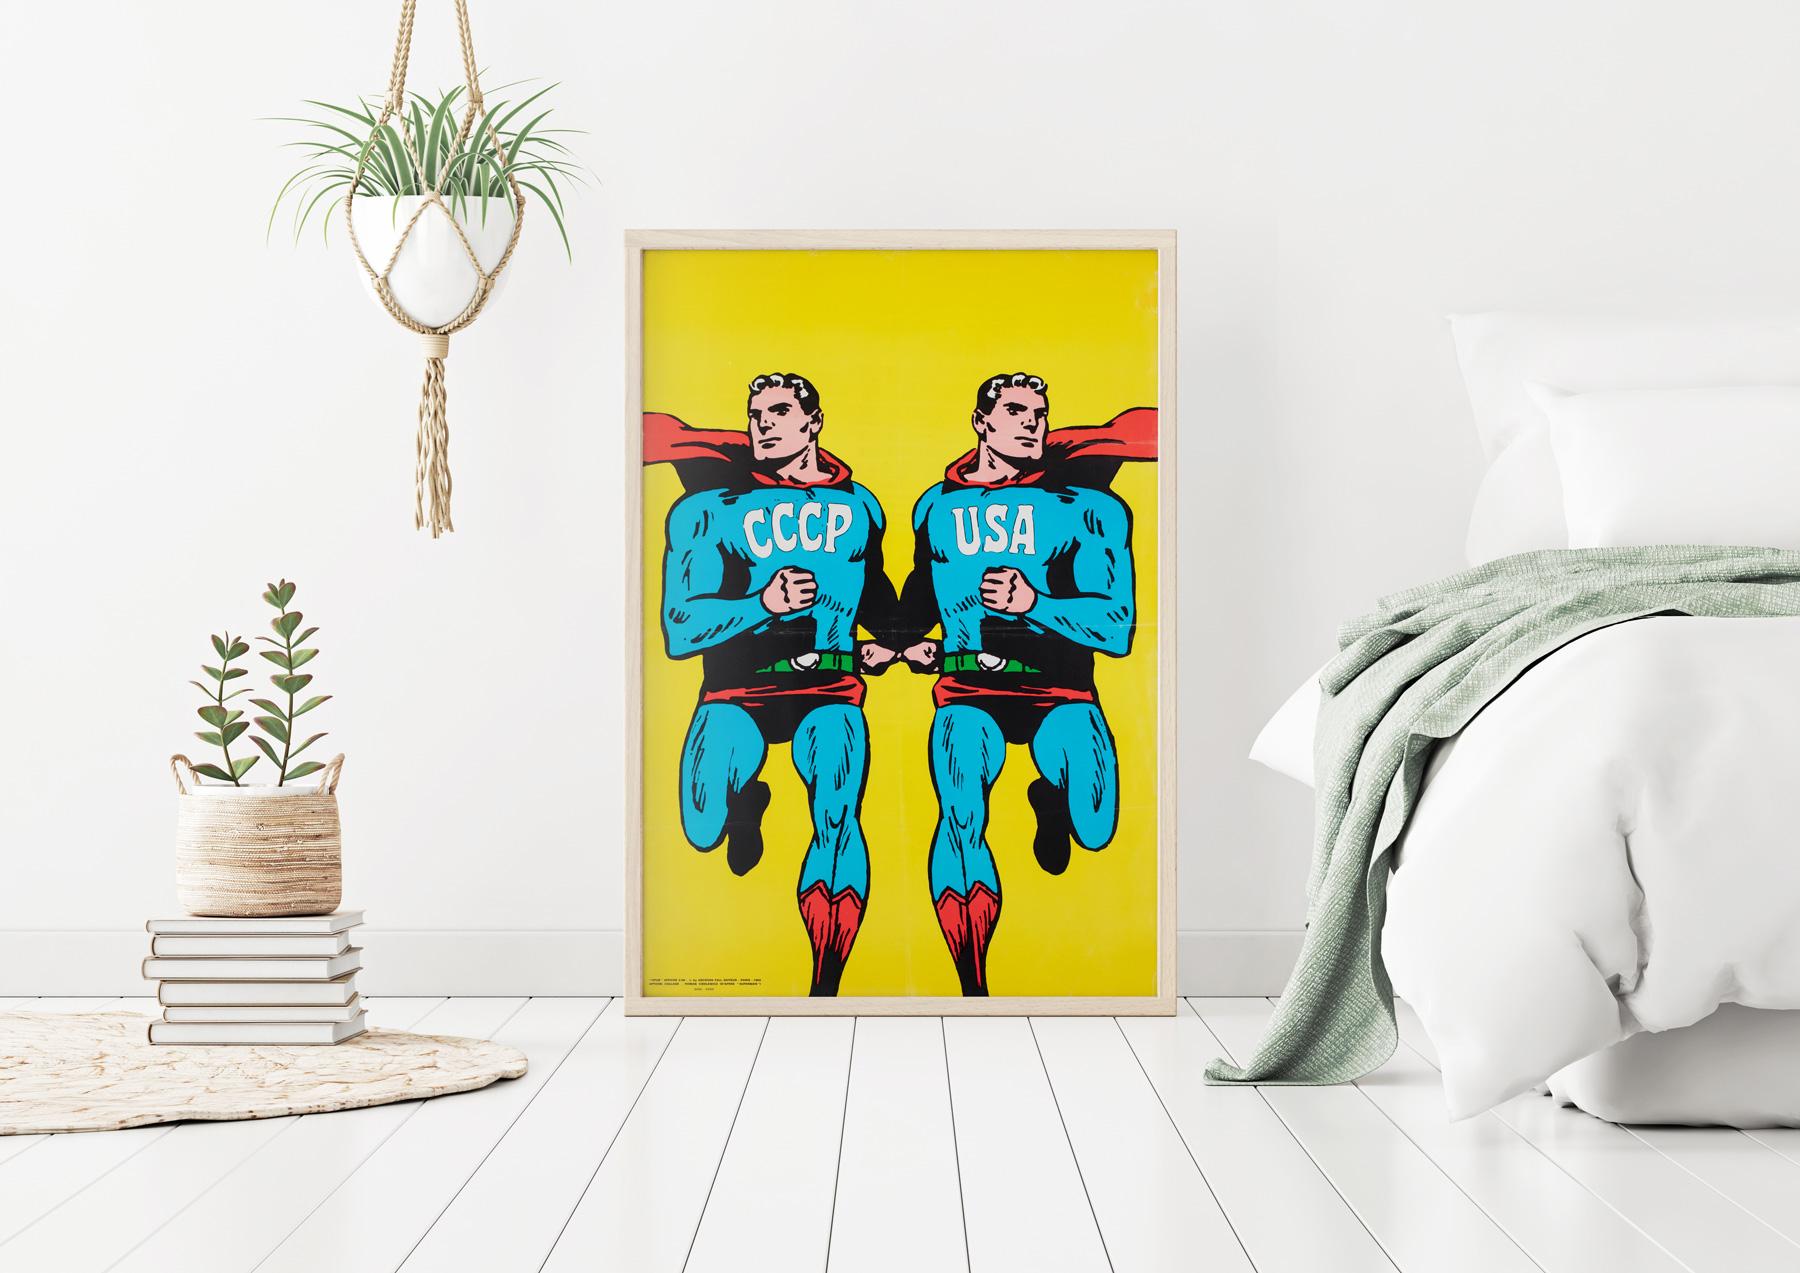 ¡Un póster superchulo de Superman de 1968!  

Original 1968 Guerra Fría  Cartel de Roman Cieslewicz URSS / CCCP EEUU. Creada como portada de la revista francesa de arte de izquierdas 